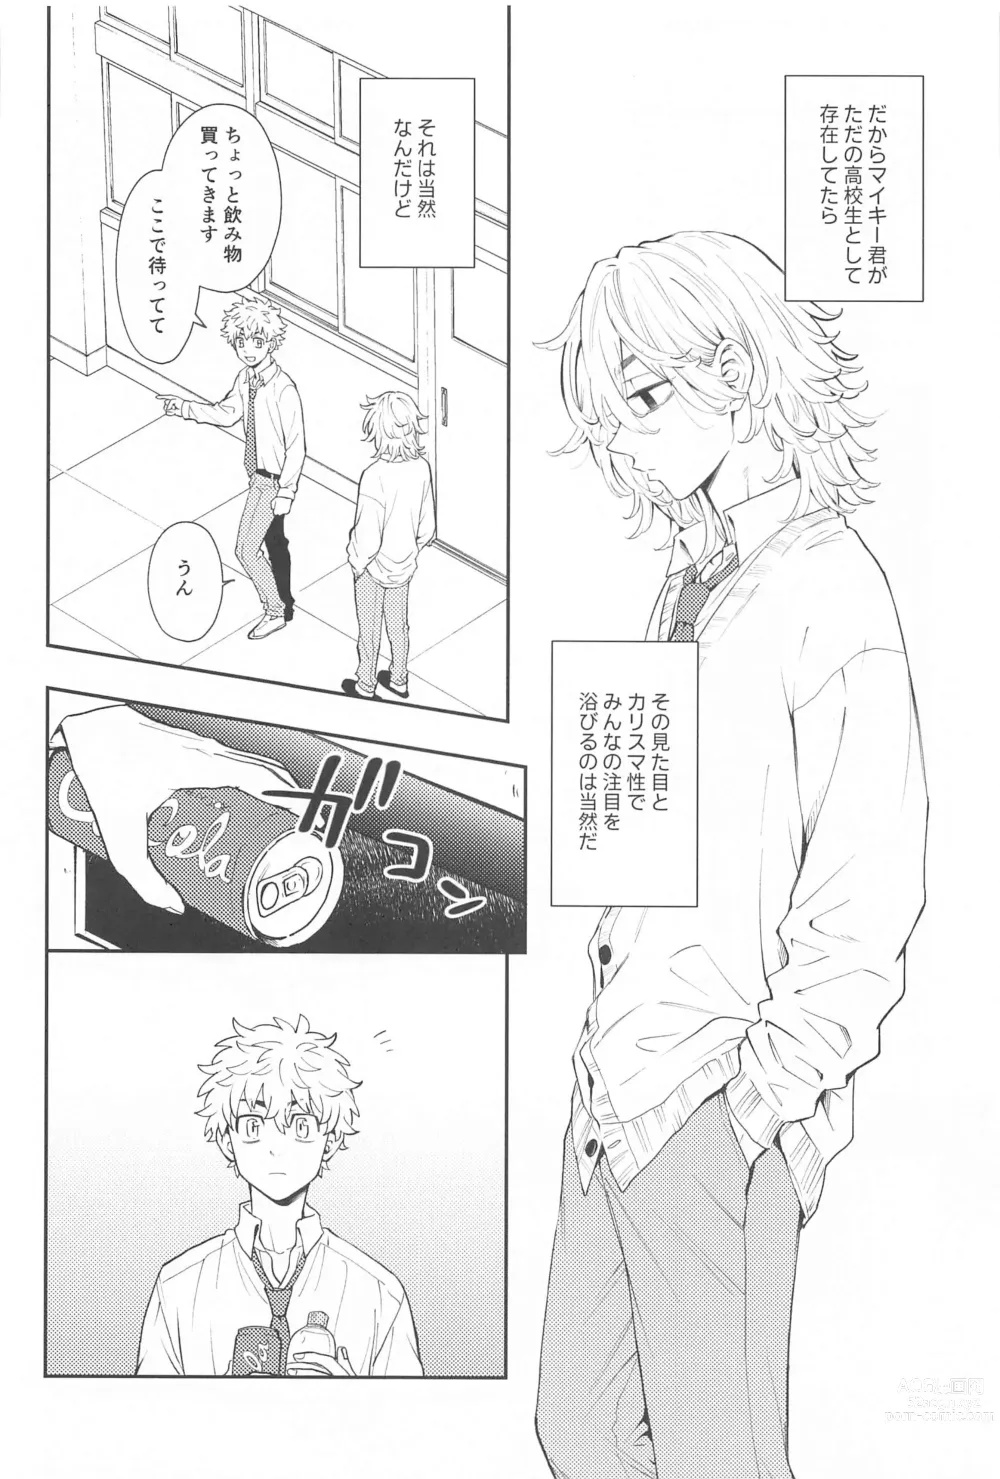 Page 11 of doujinshi Kyou wa Osoroi de!